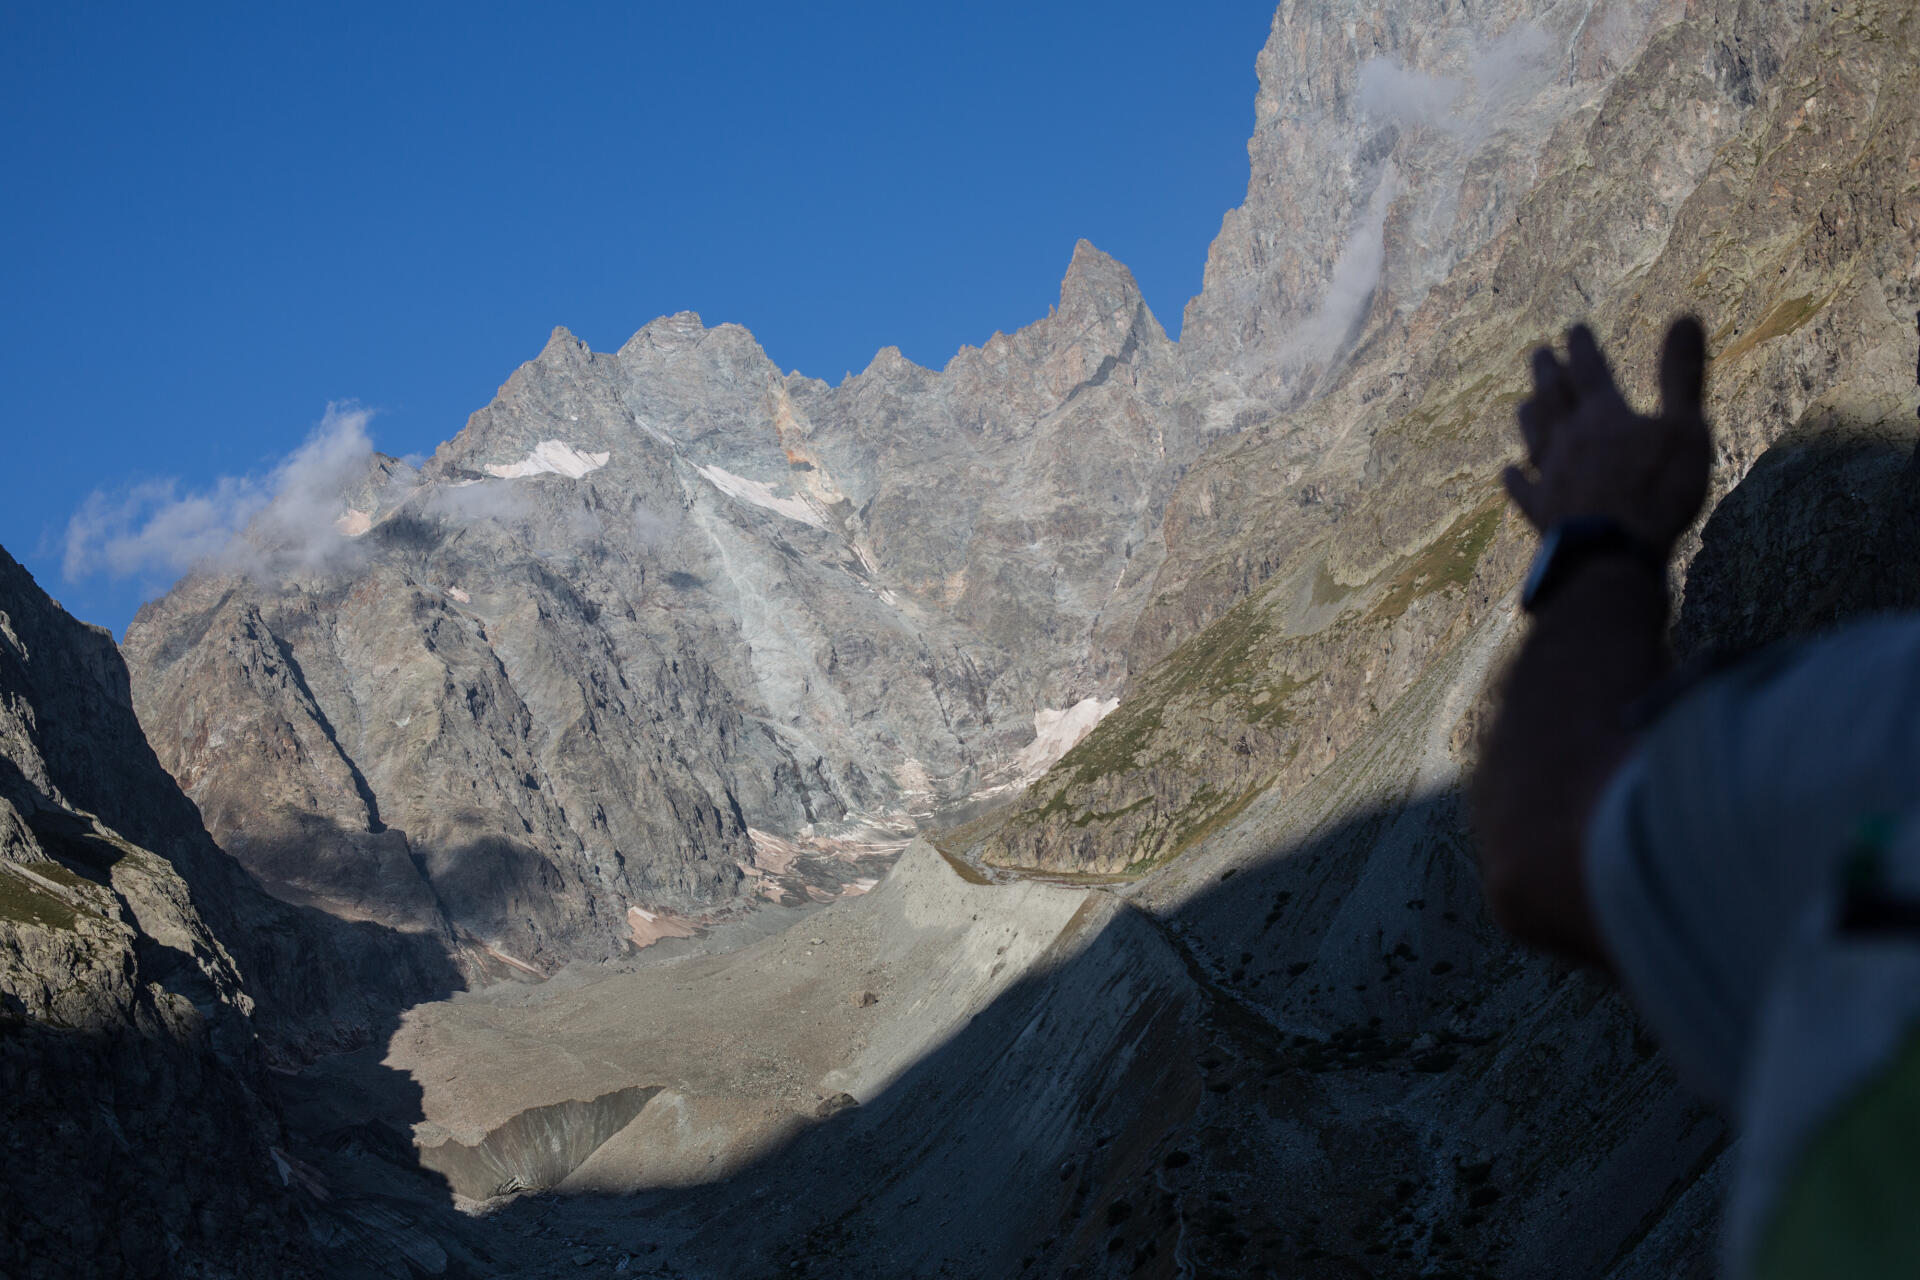 Thierry Maillet, technicien patrimoine au parc national des Ecrins, sur le secteur de Vallouise, montre le glacier Noir, dont une partie est recouverte par des cailloux, dans les Hautes-Alpes, le 26 juillet 2022.
